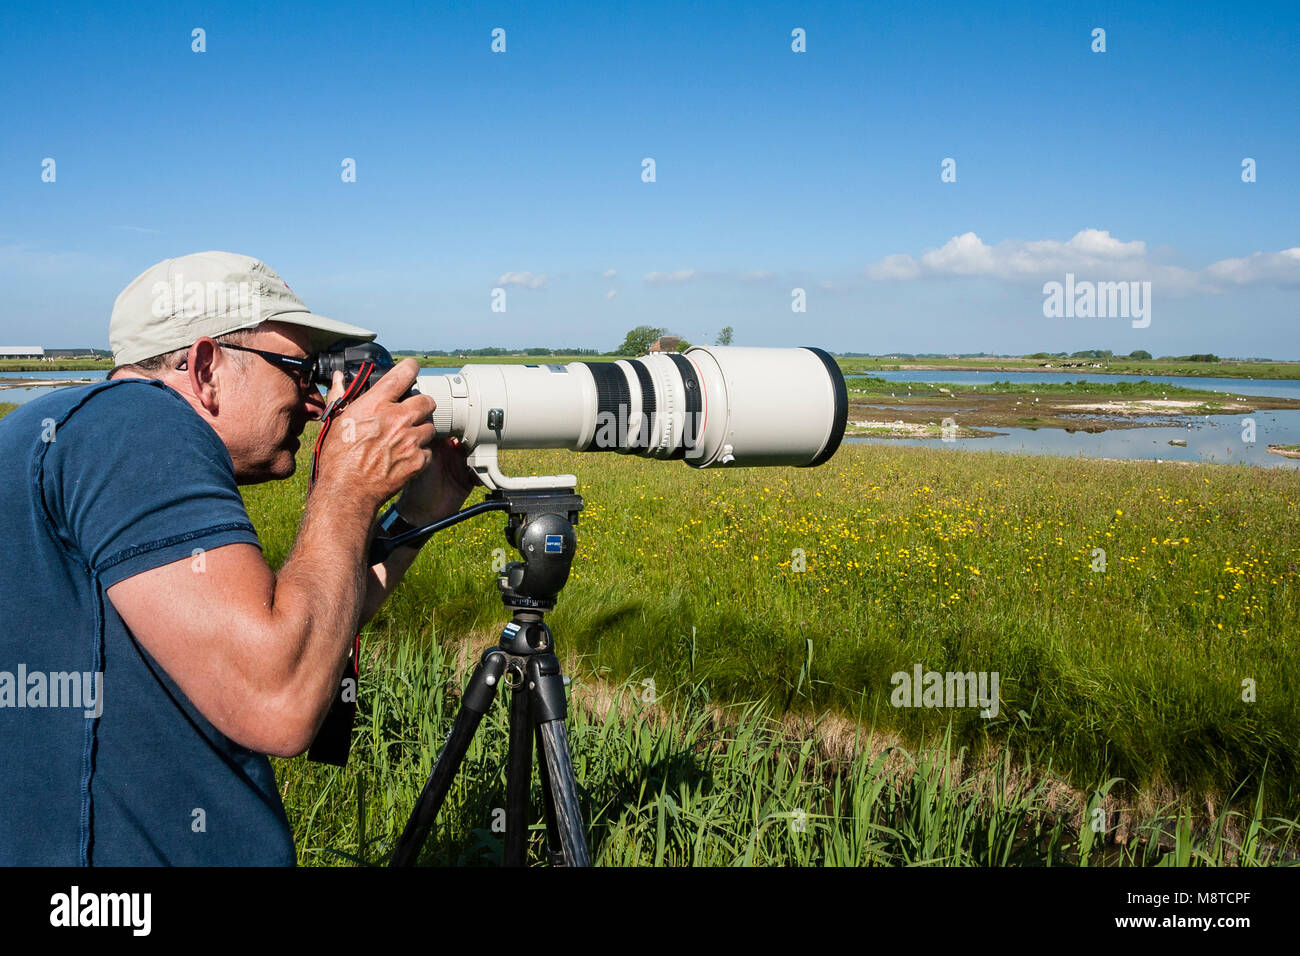 Mann fotografeert Vogels in waterplas; Mann, Fotografieren von Vögeln in See Stockfoto